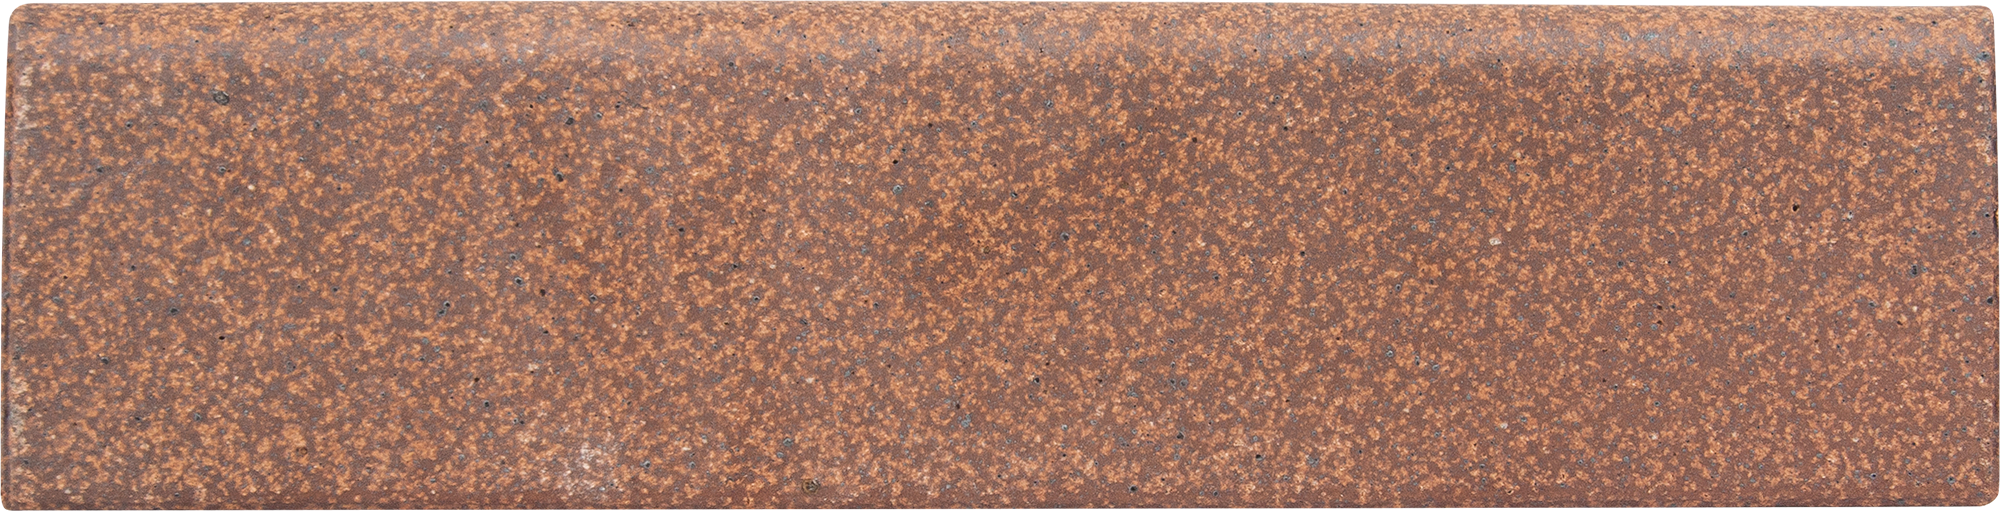 12838126 Керамический плинтус 8х33 см клинкер цвет коричневый Rodapie STLM-0002451 GRESAN